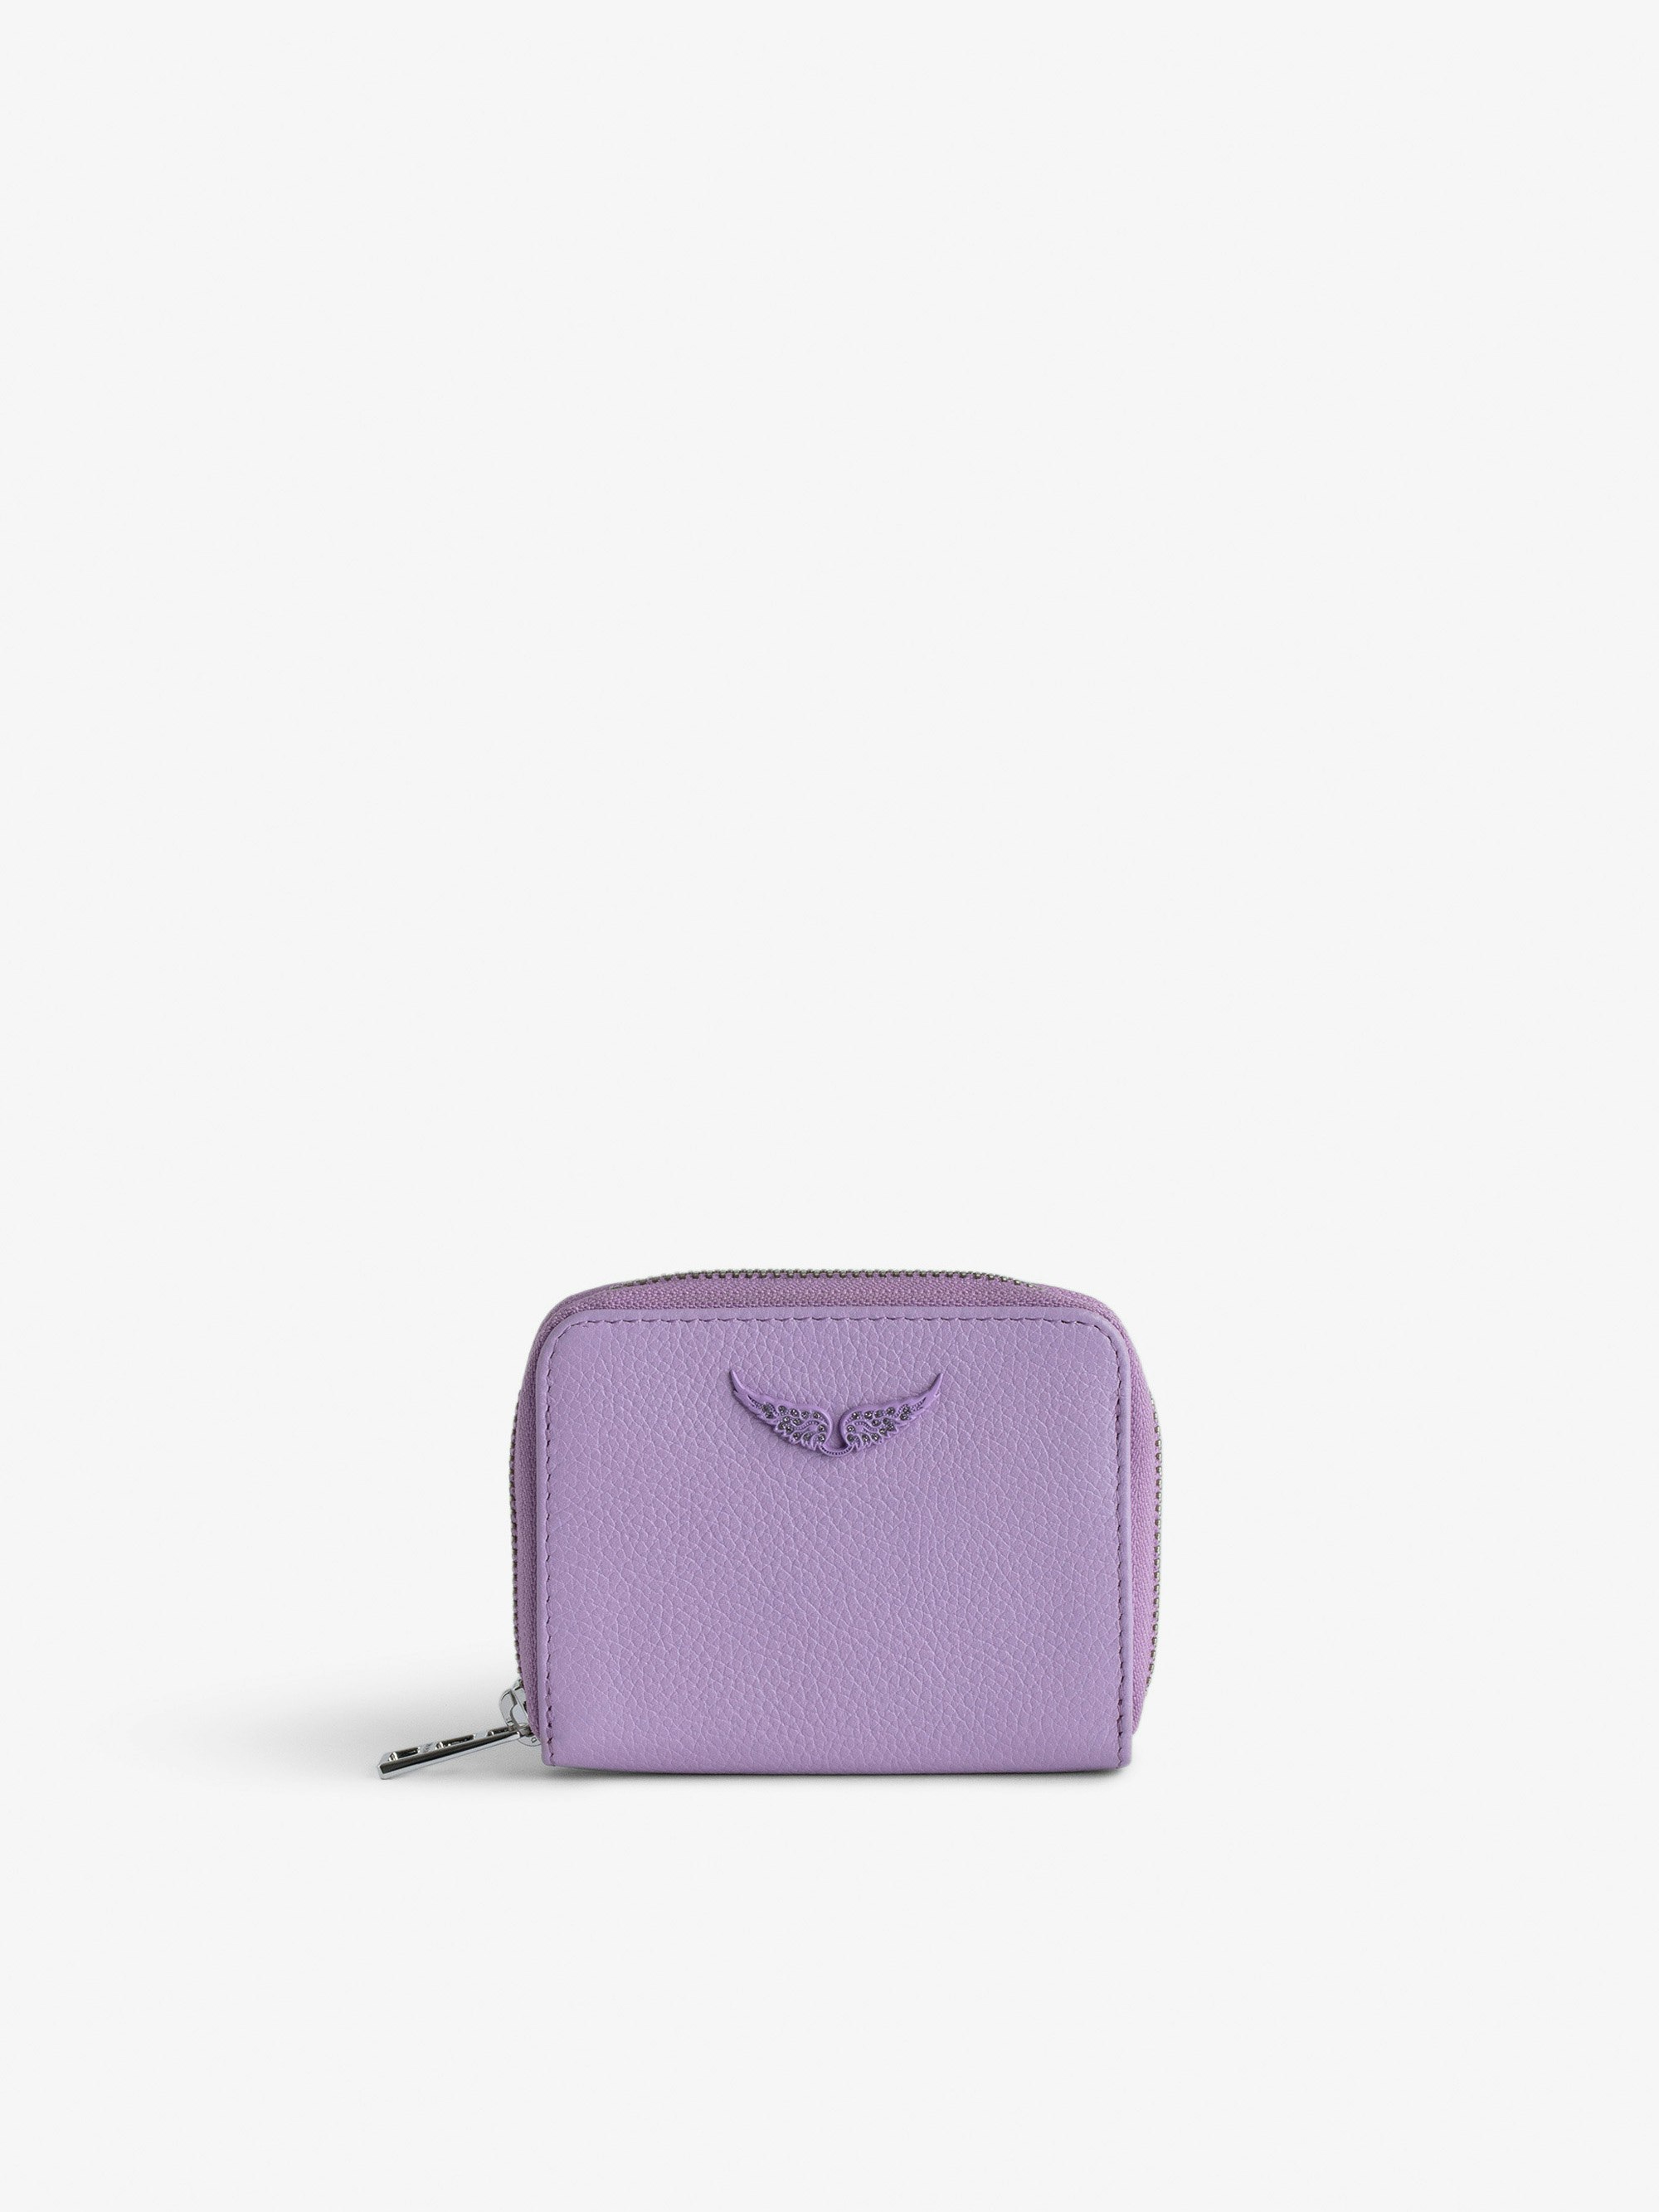 Monedero Mini ZV - Monedero de piel con efecto granulado en color violeta con colgante de alas con strass.